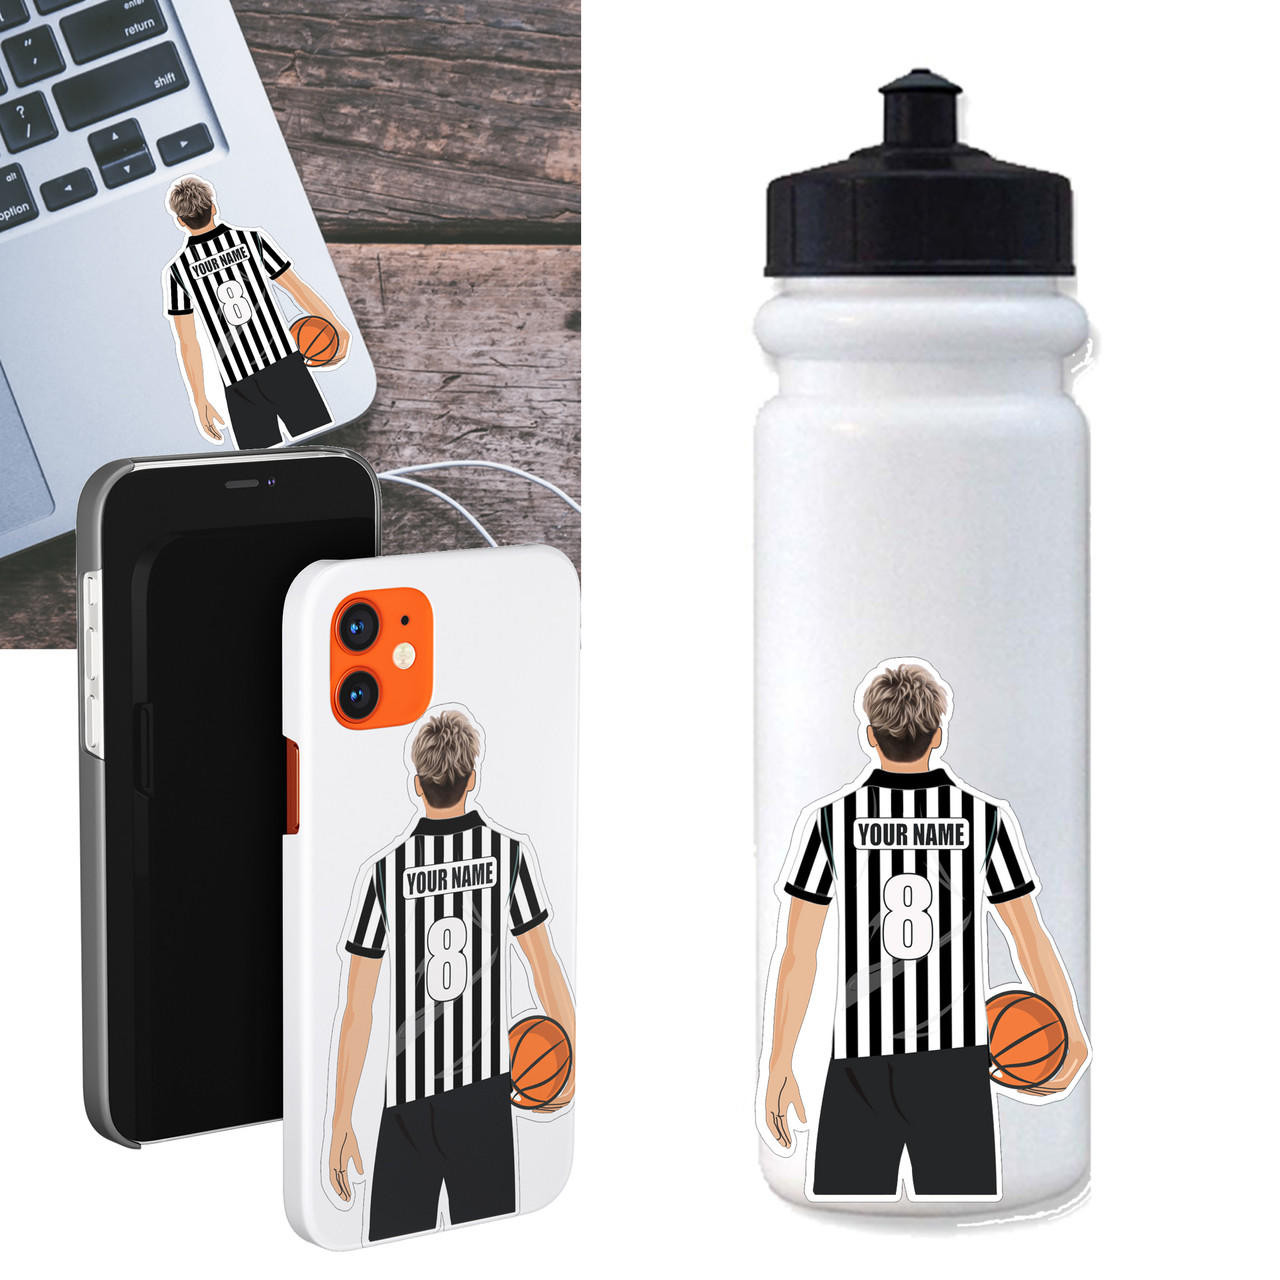 Stinky Lockers Personalized Basketball Referee Sticker 